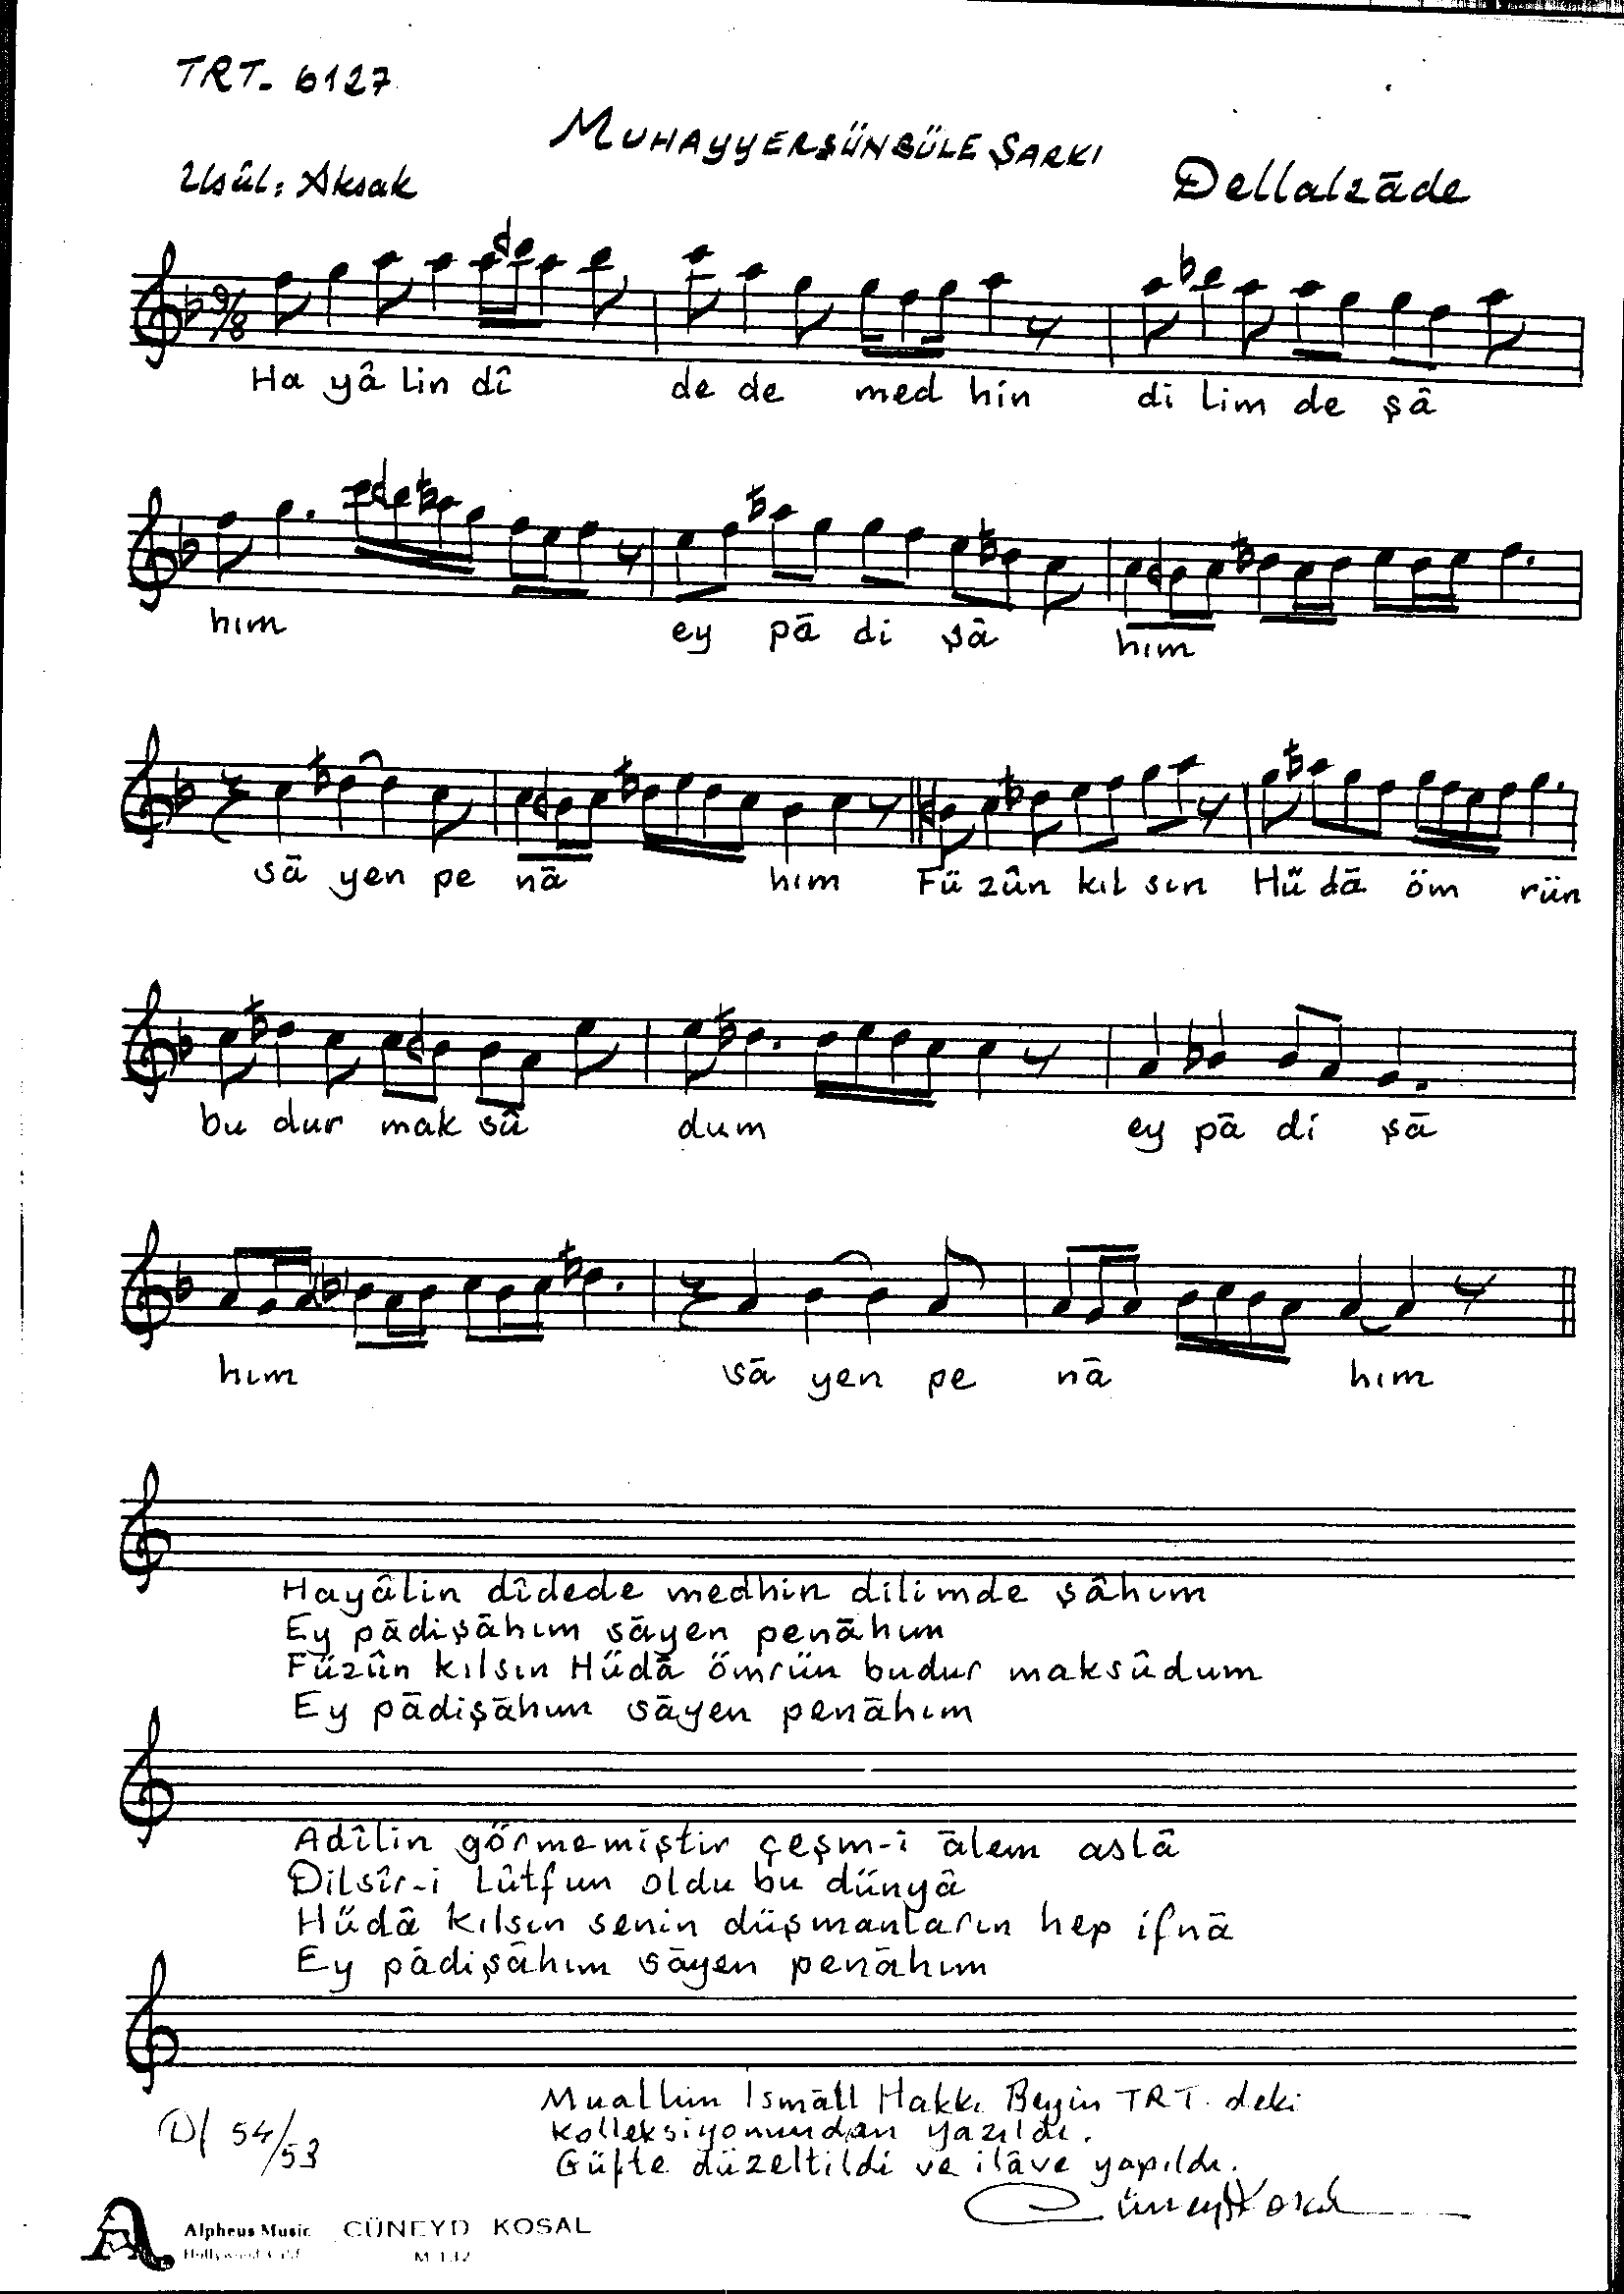 Muhayyer-Sünbüle - Şarkı - Dellalzâde  - Sayfa 1